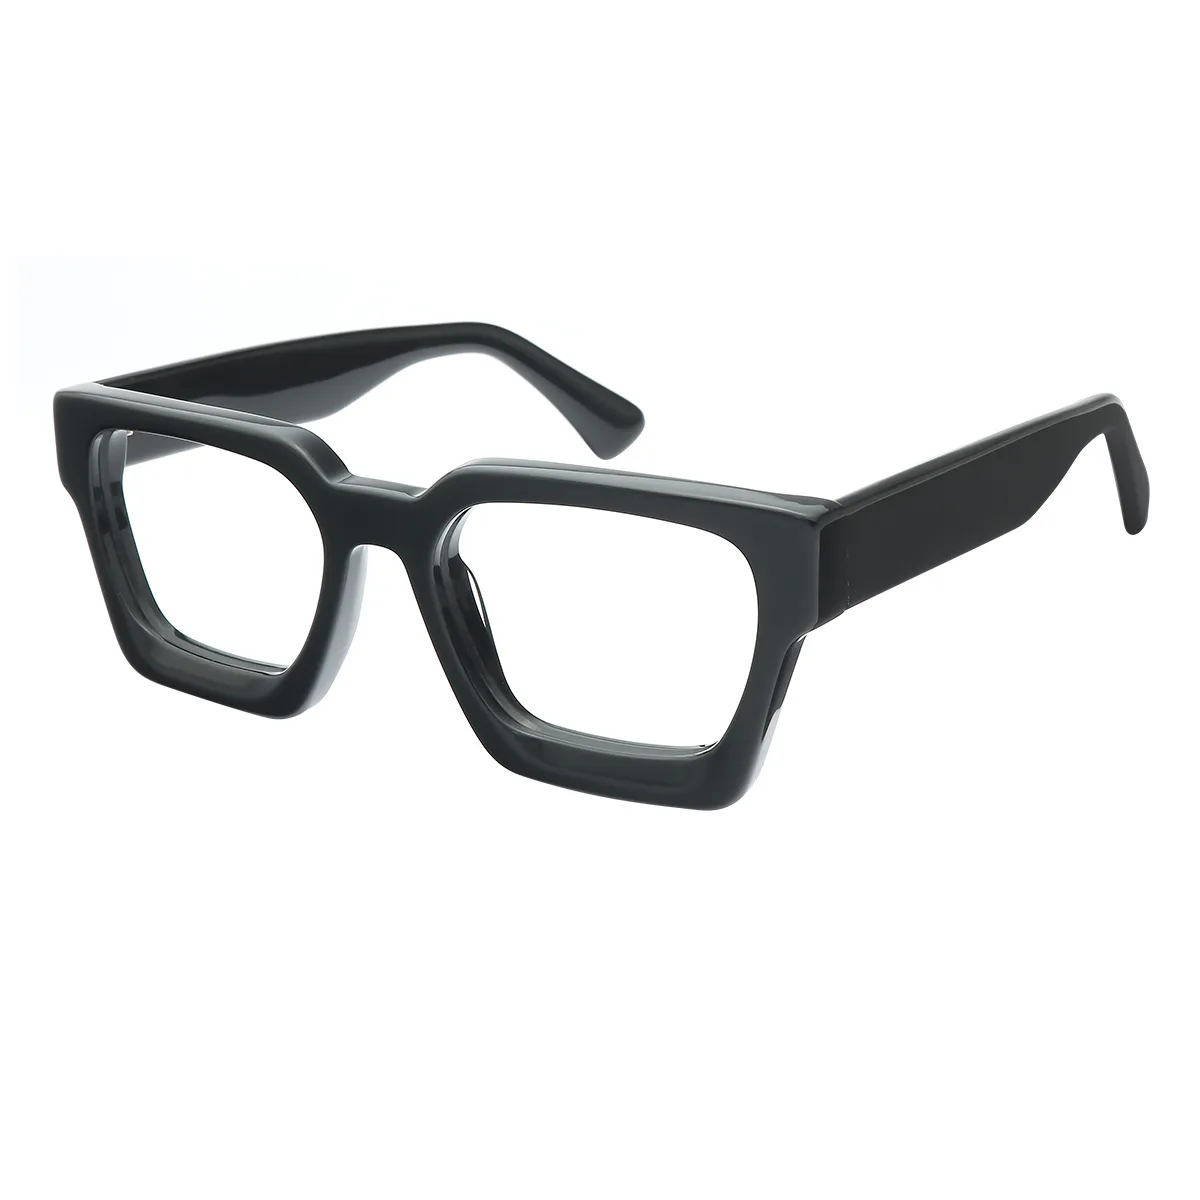 Classic Square Black Eyeglasses for Women & Men